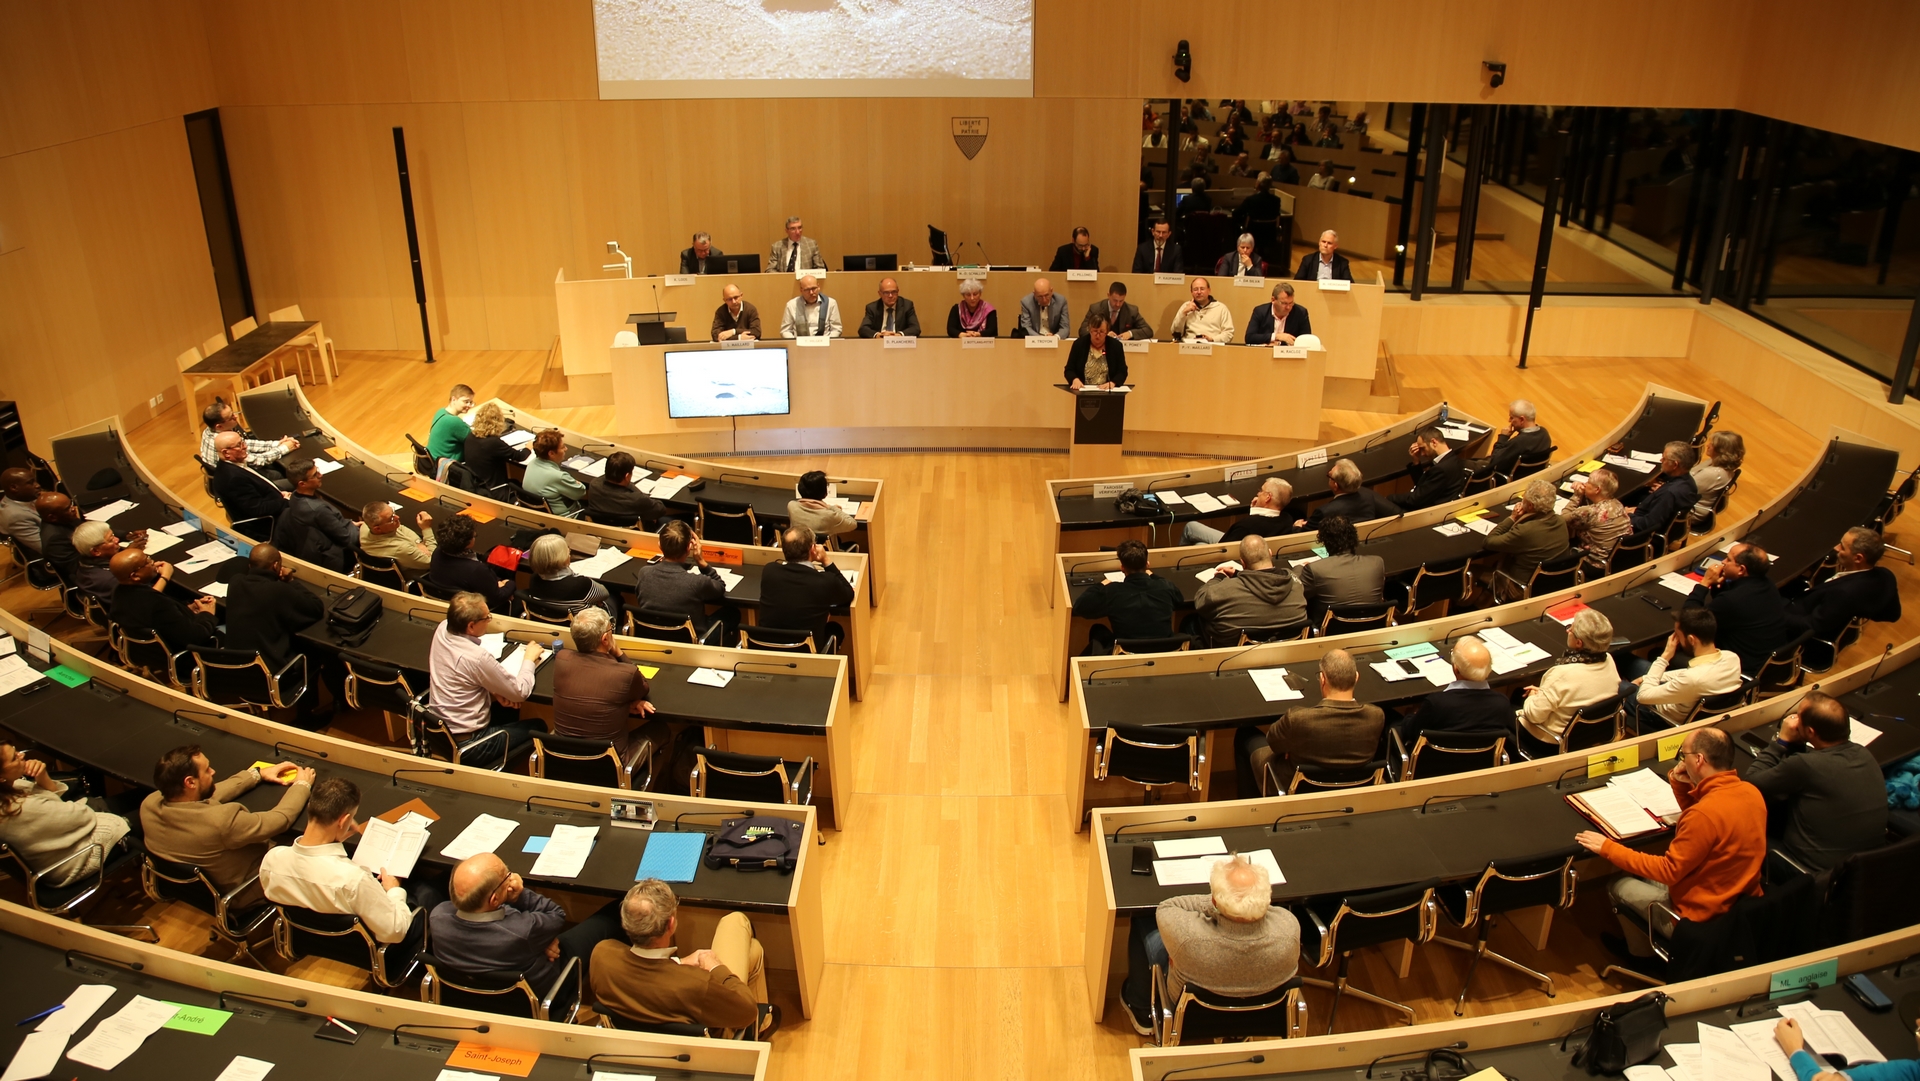 L'assemblée de la FEDEC-VD s'est réunie dans la salle du Grand Conseil vaudois, comme ici en décembre 2022 | © FEDEC-VD